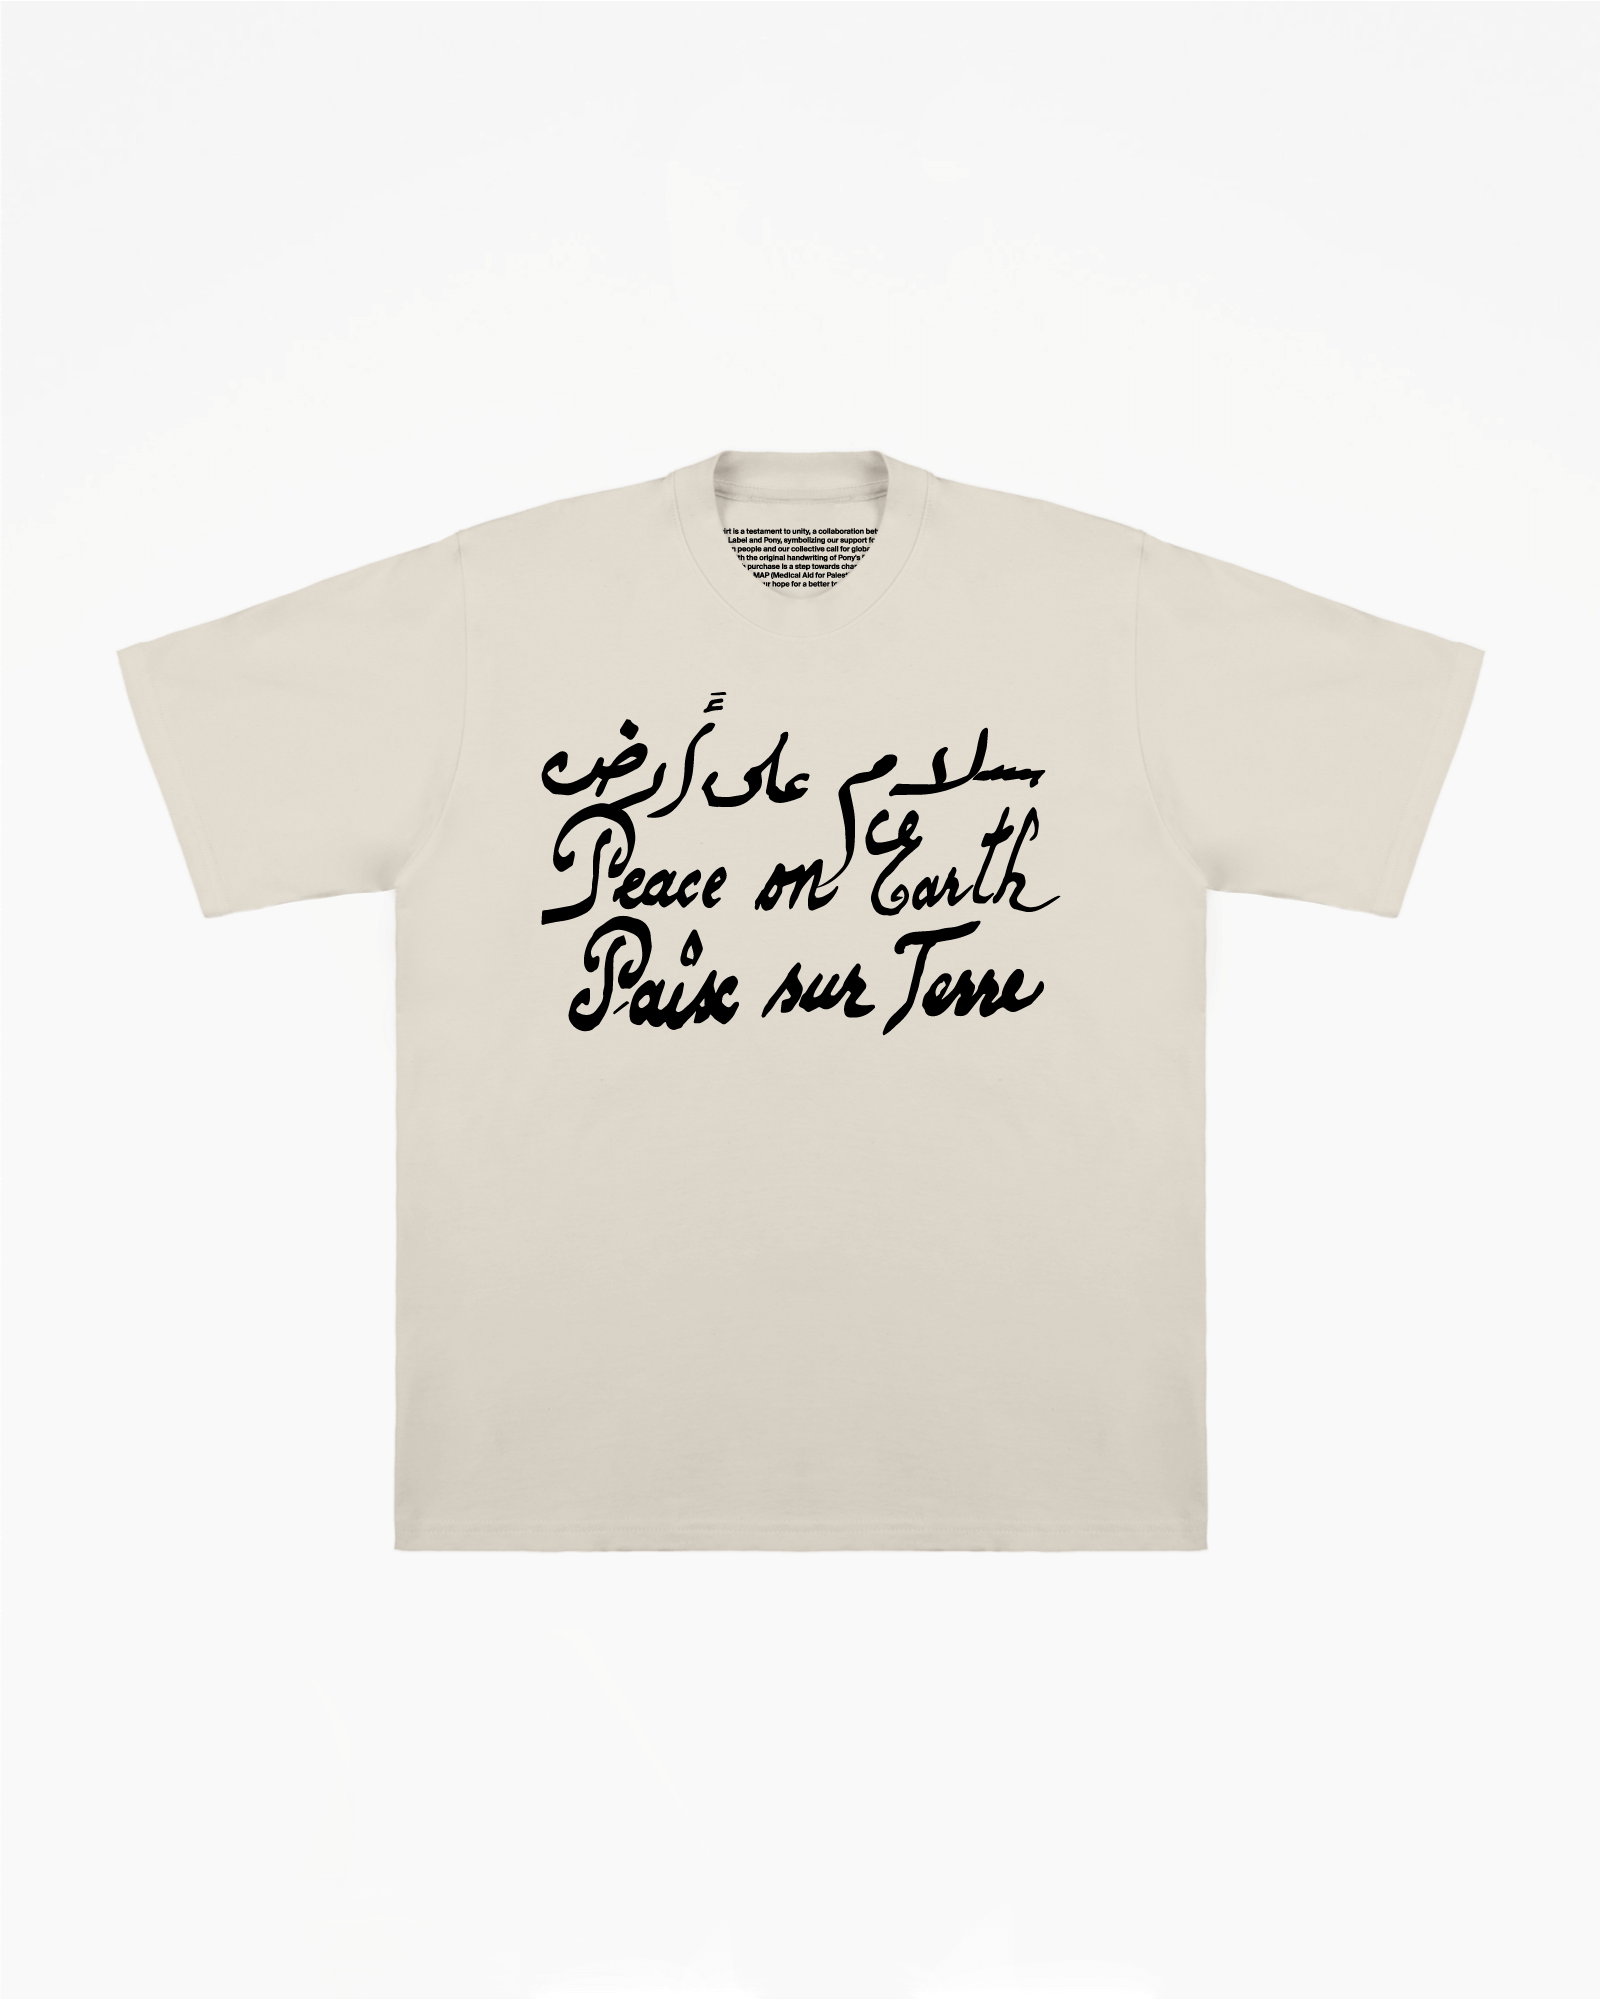 Paix pour la Palestine T-shirt